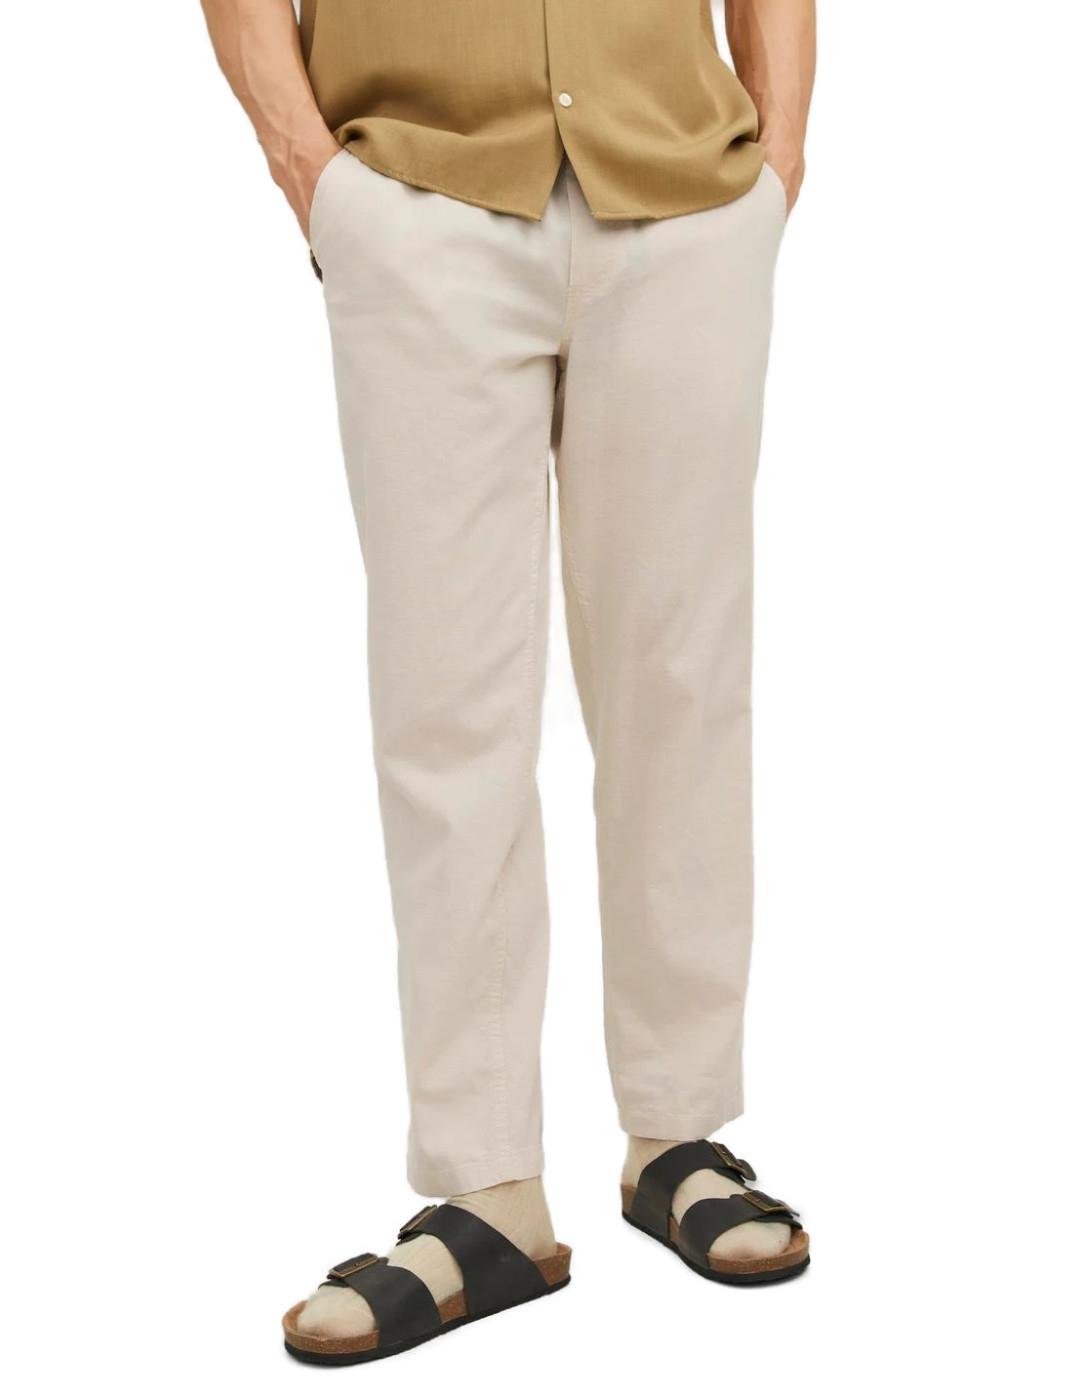 Pantalón Jack&Jones de lino cintura elástica beige de hombre